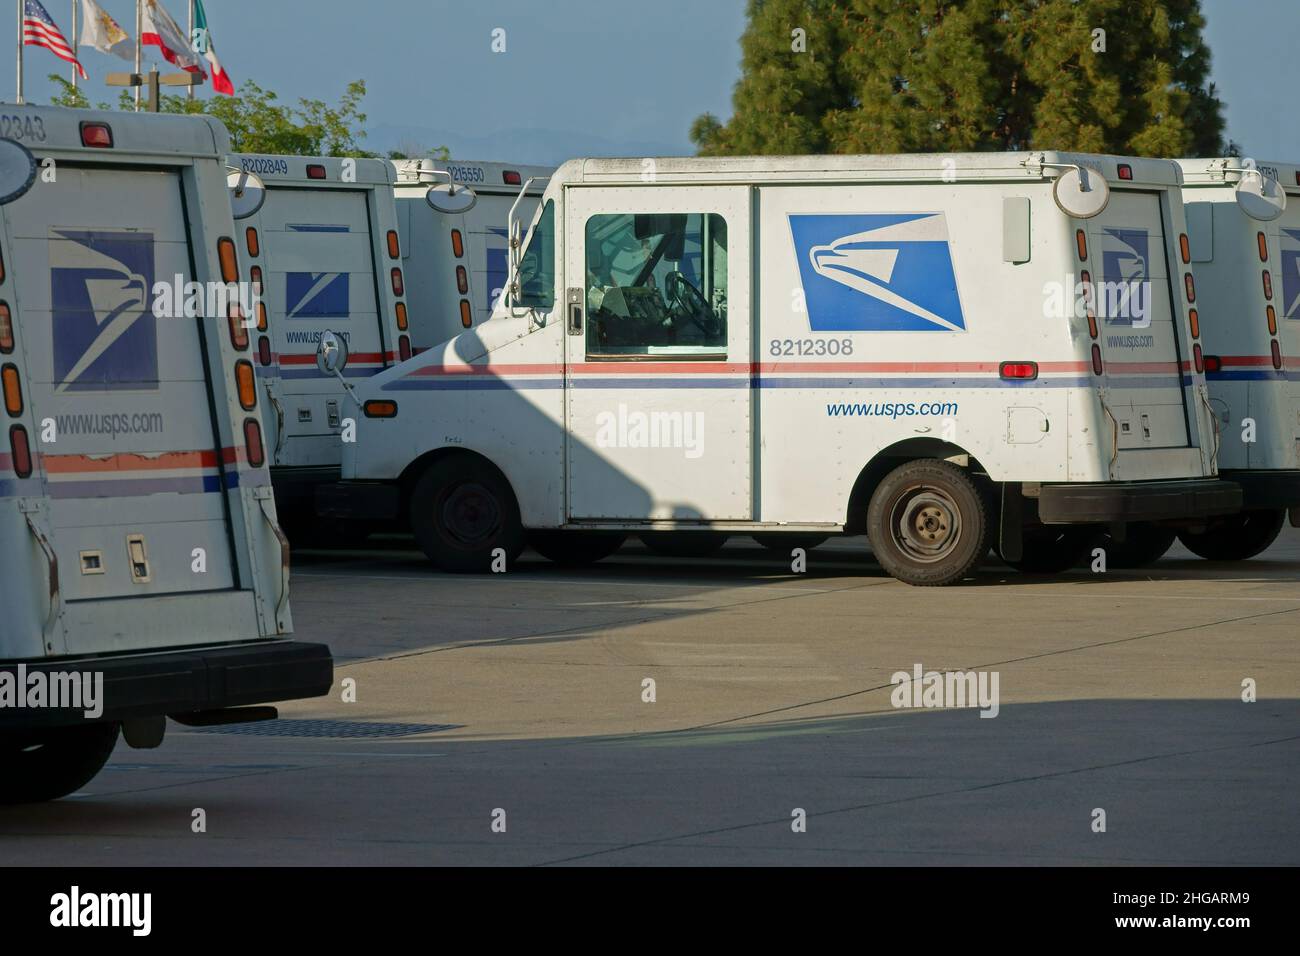 Monterey, CA / USA - 3 de abril de 2021: Se muestran los camiones de correo Grumman LLV (vehículo de larga duración), operados por el Servicio Postal de los Estados Unidos (USPS). Foto de stock